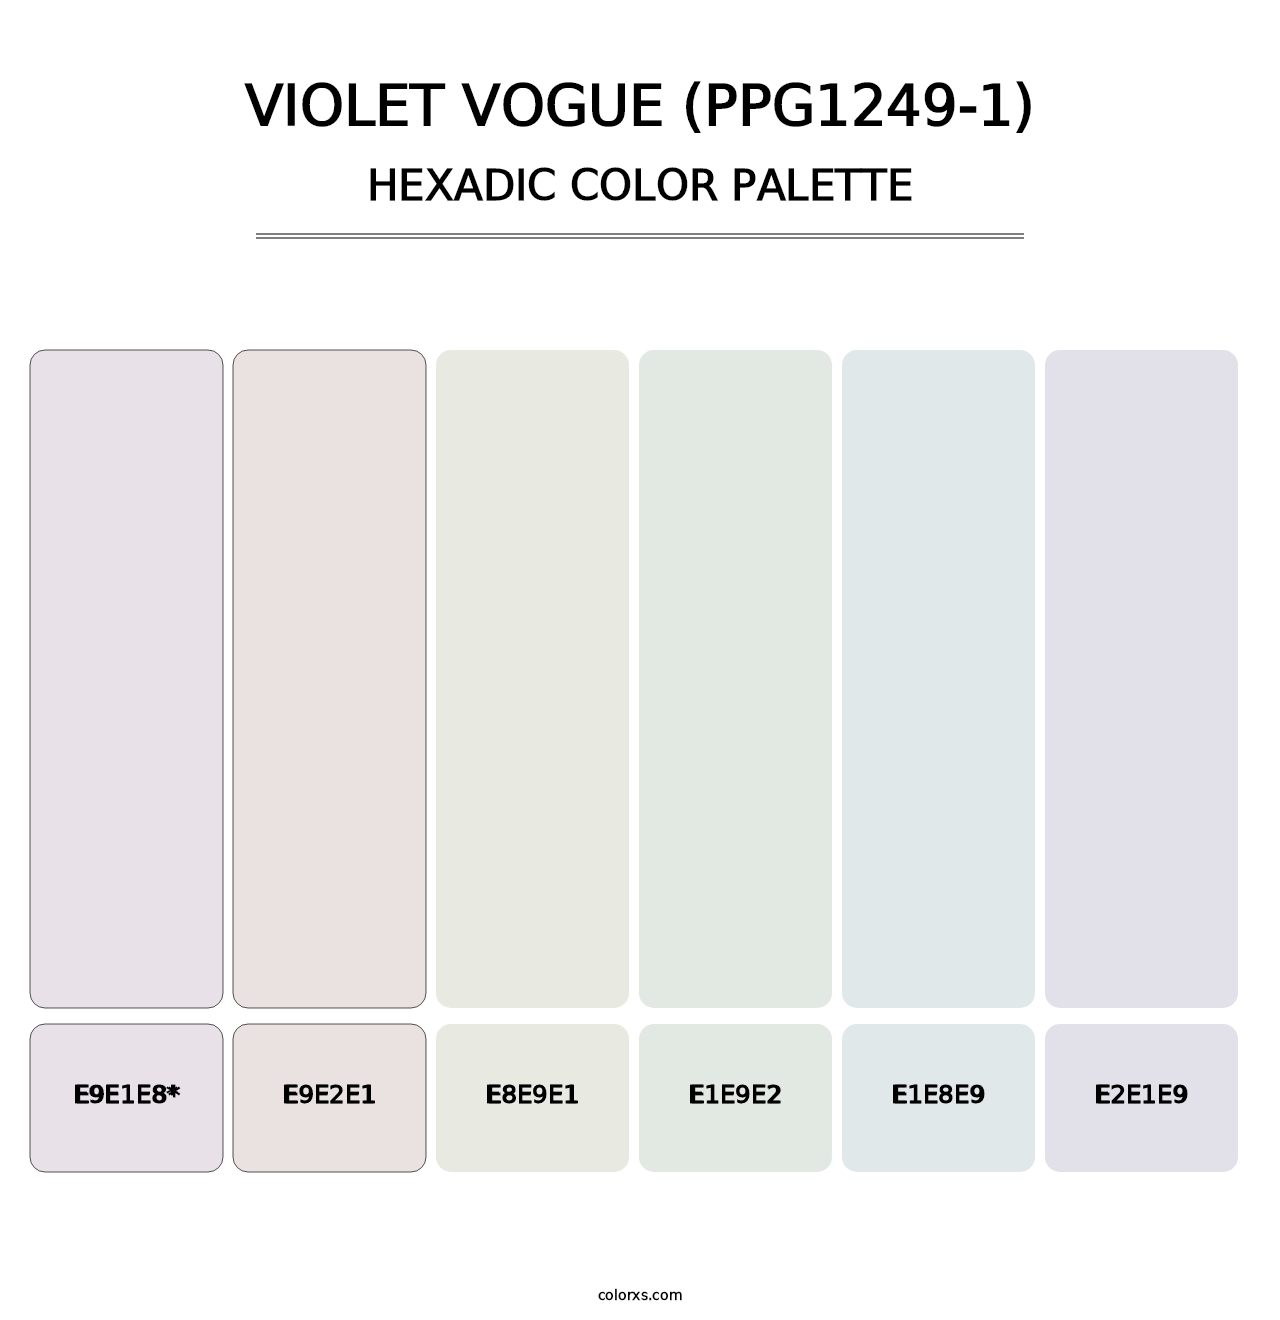 Violet Vogue (PPG1249-1) - Hexadic Color Palette